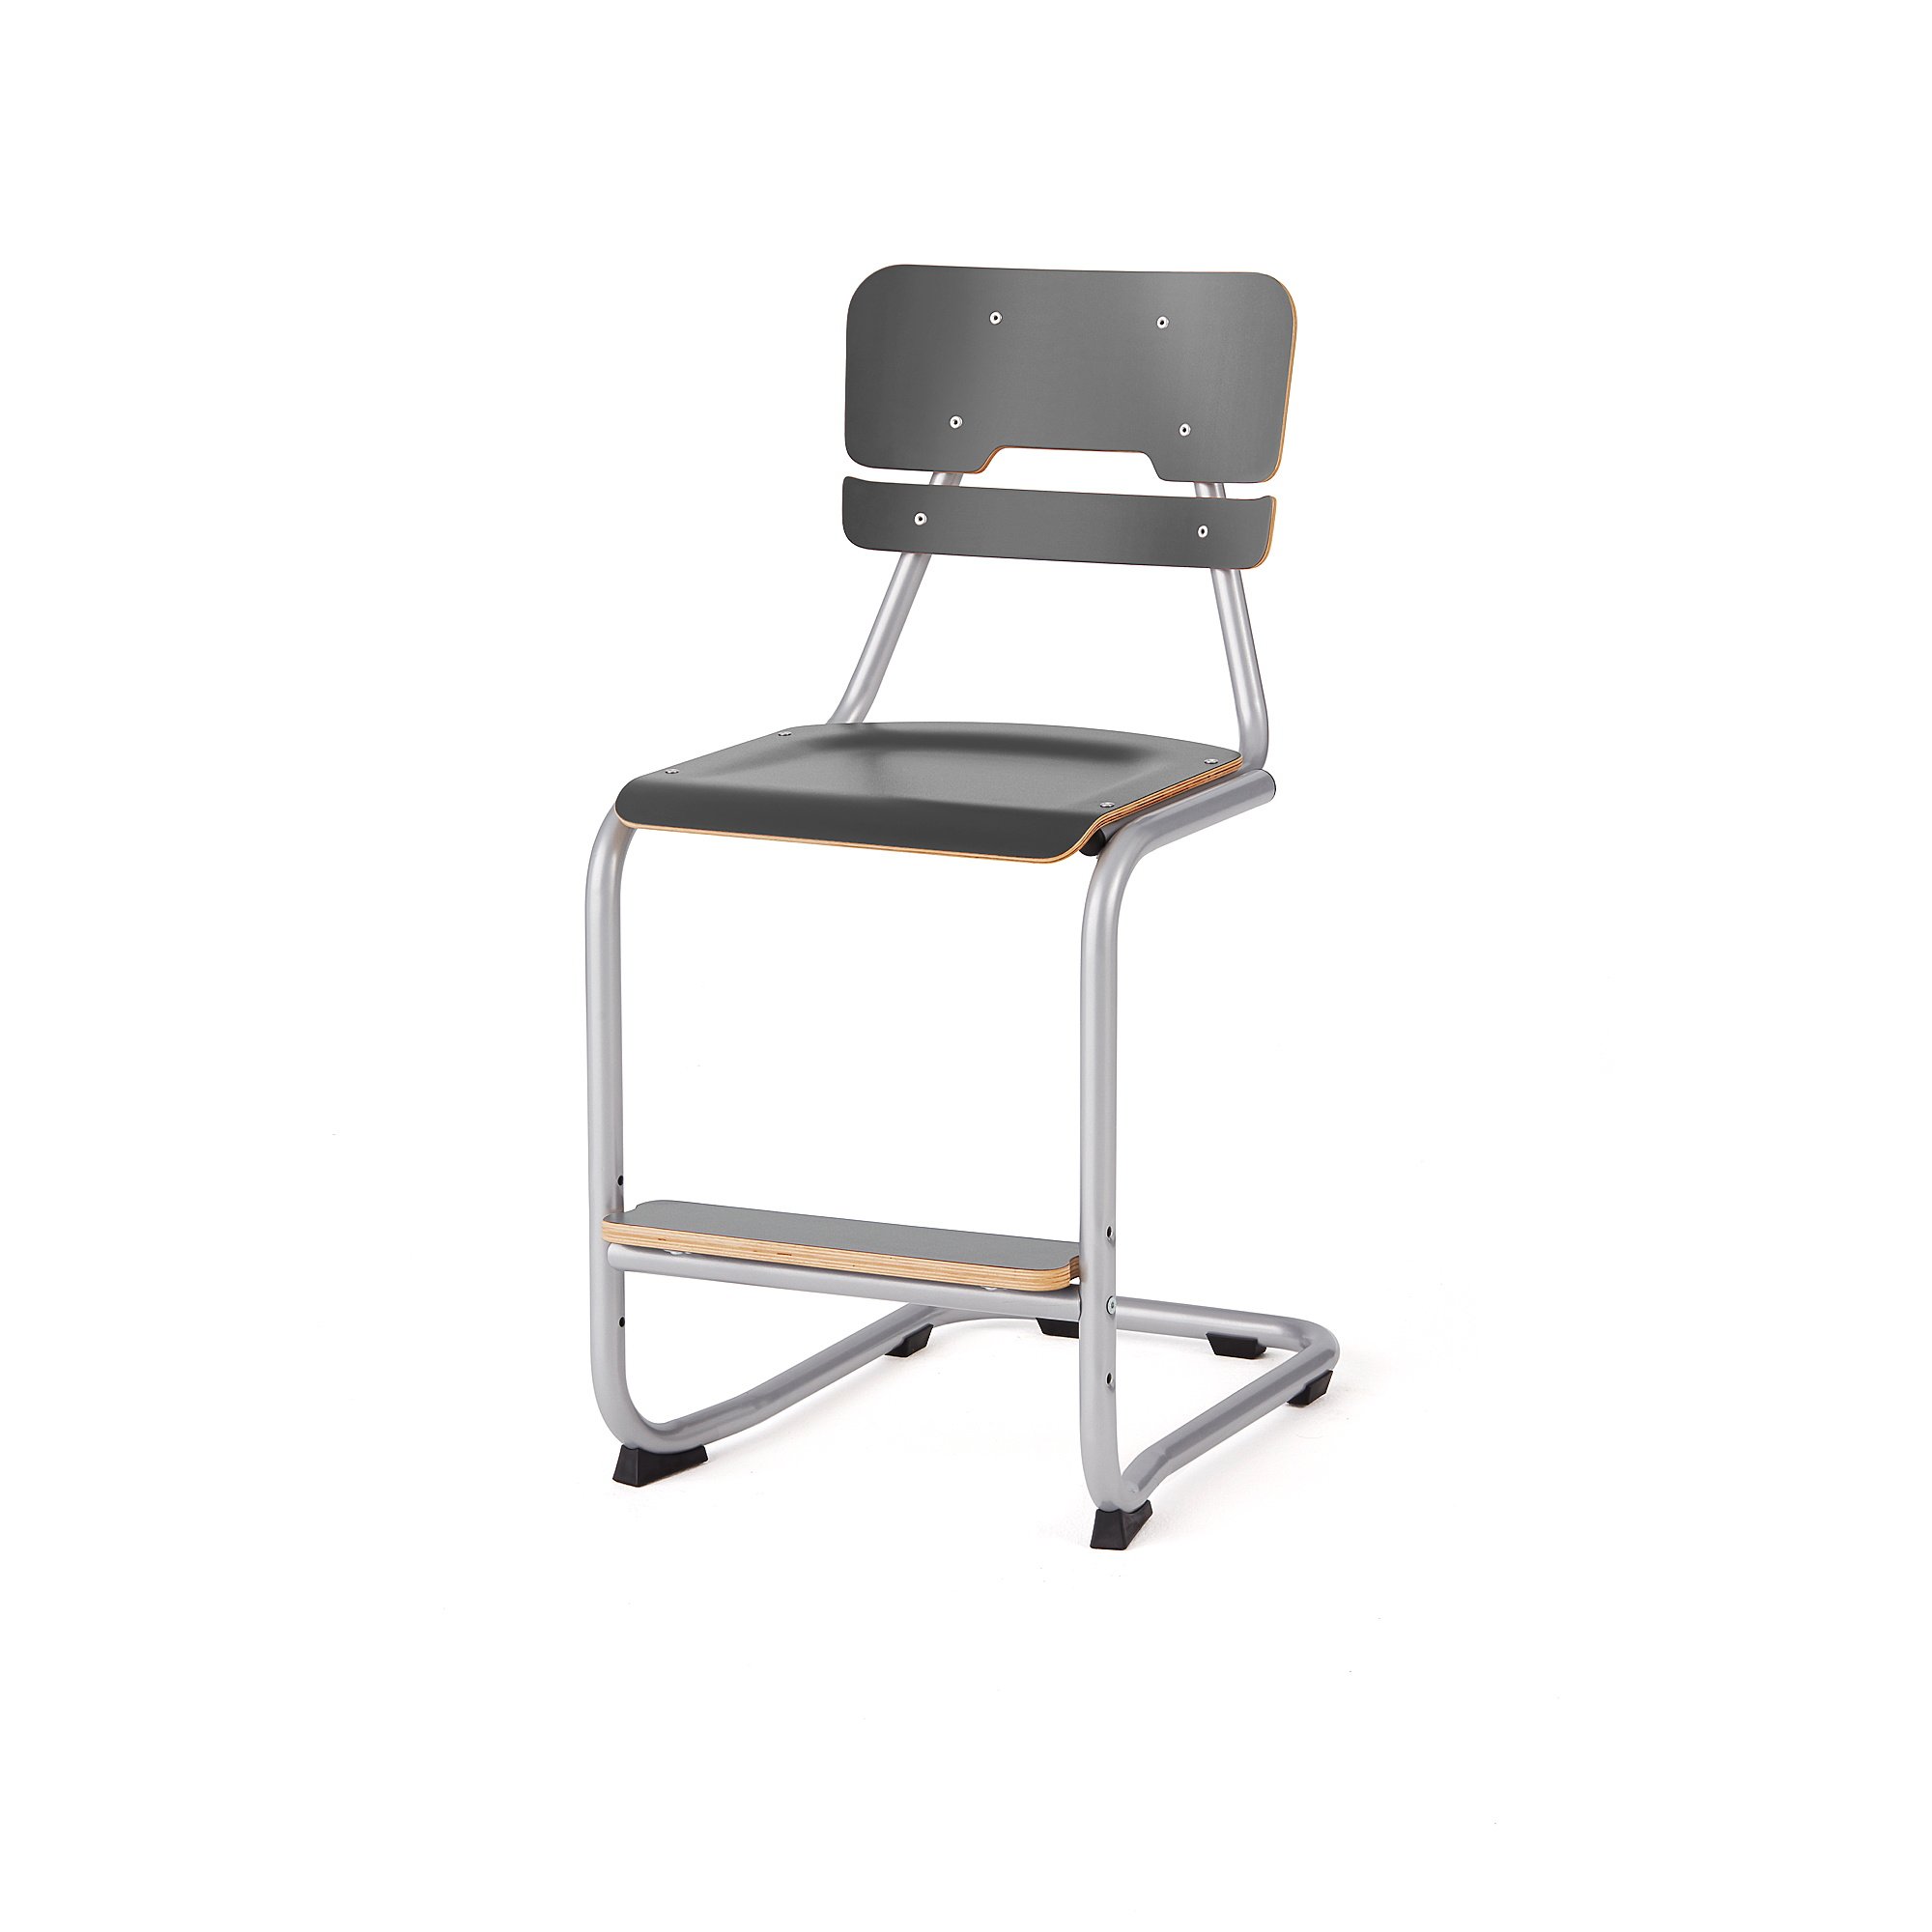 Školní židle LEGERE III, výška 500 mm, stříbrná, antracitově šedá